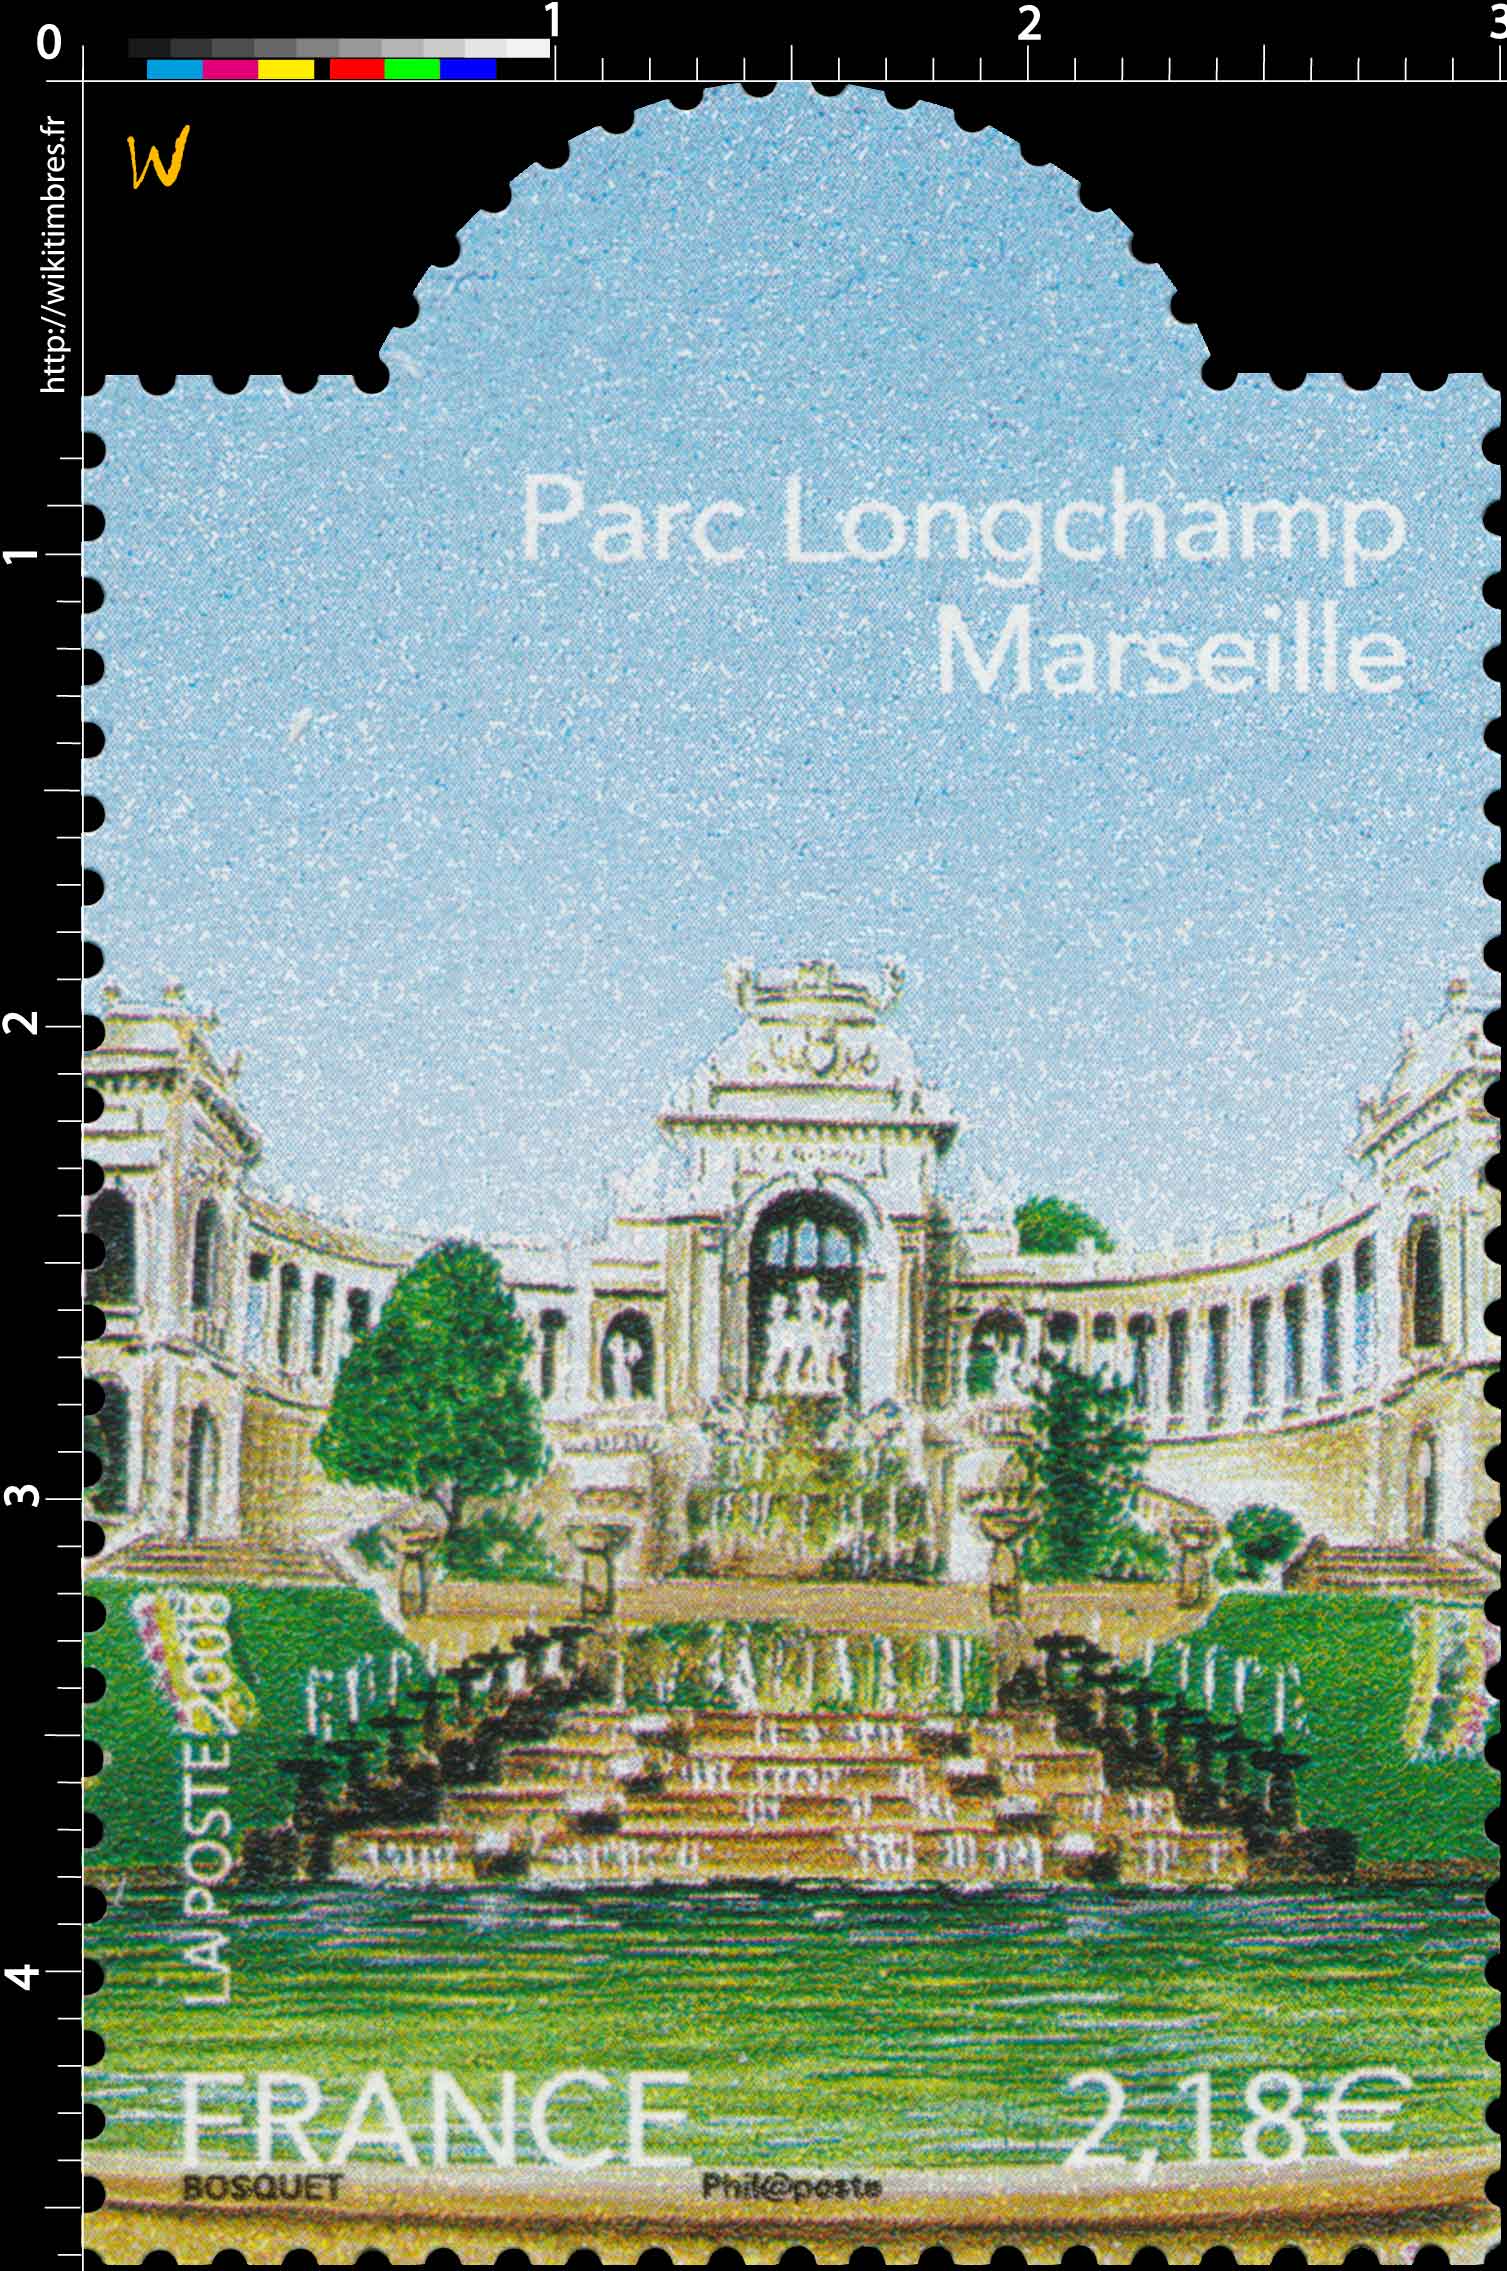 2008 Parc Longchamp Marseille